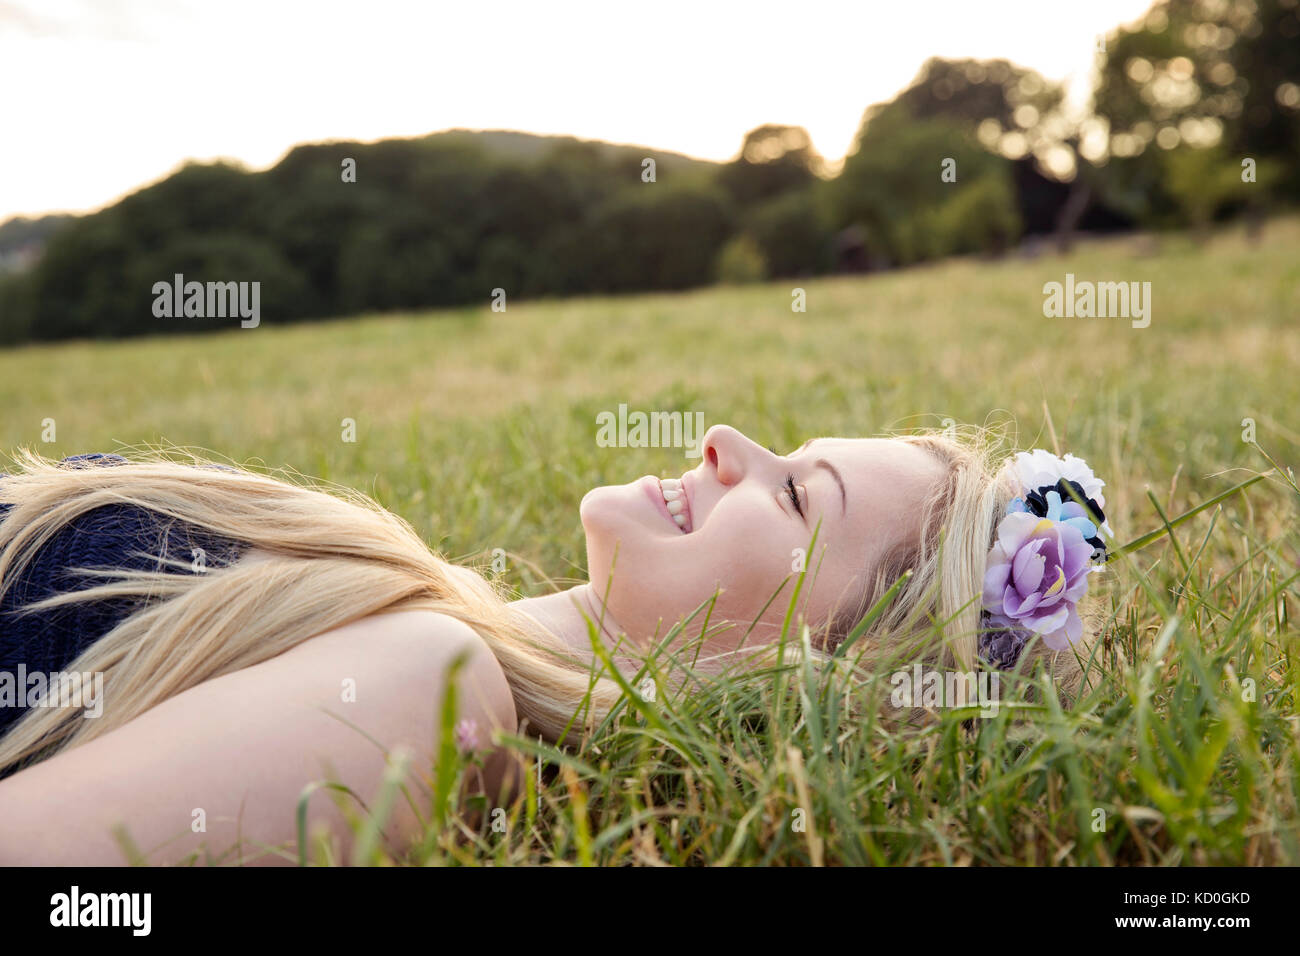 Femme avec des fleurs dans les cheveux lying on grass smiling Banque D'Images